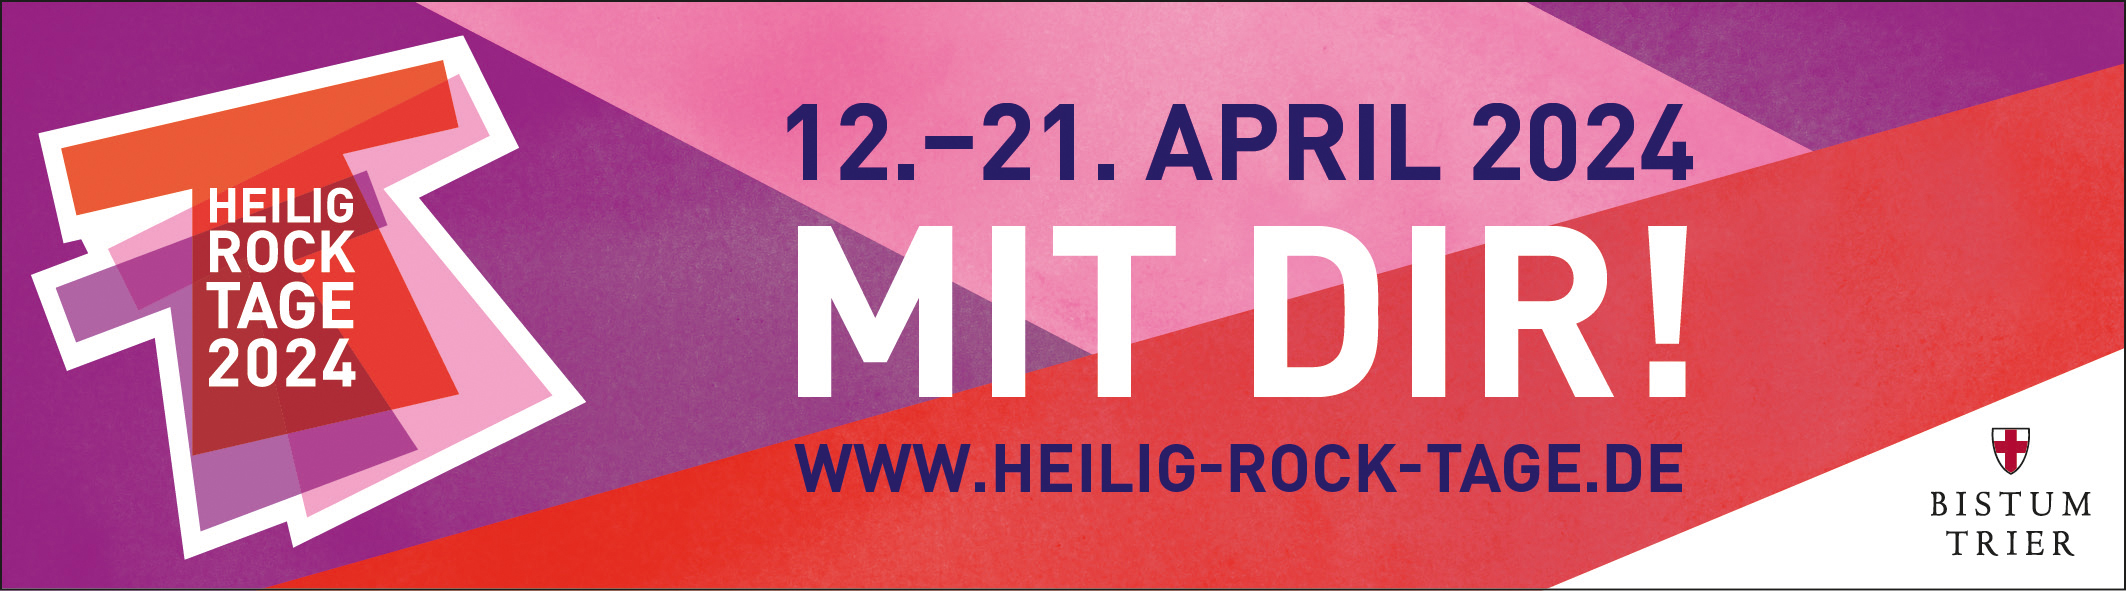 Werbeplakat für die Heilig-Rock-Tage vom 12. bis 21. April 2024.